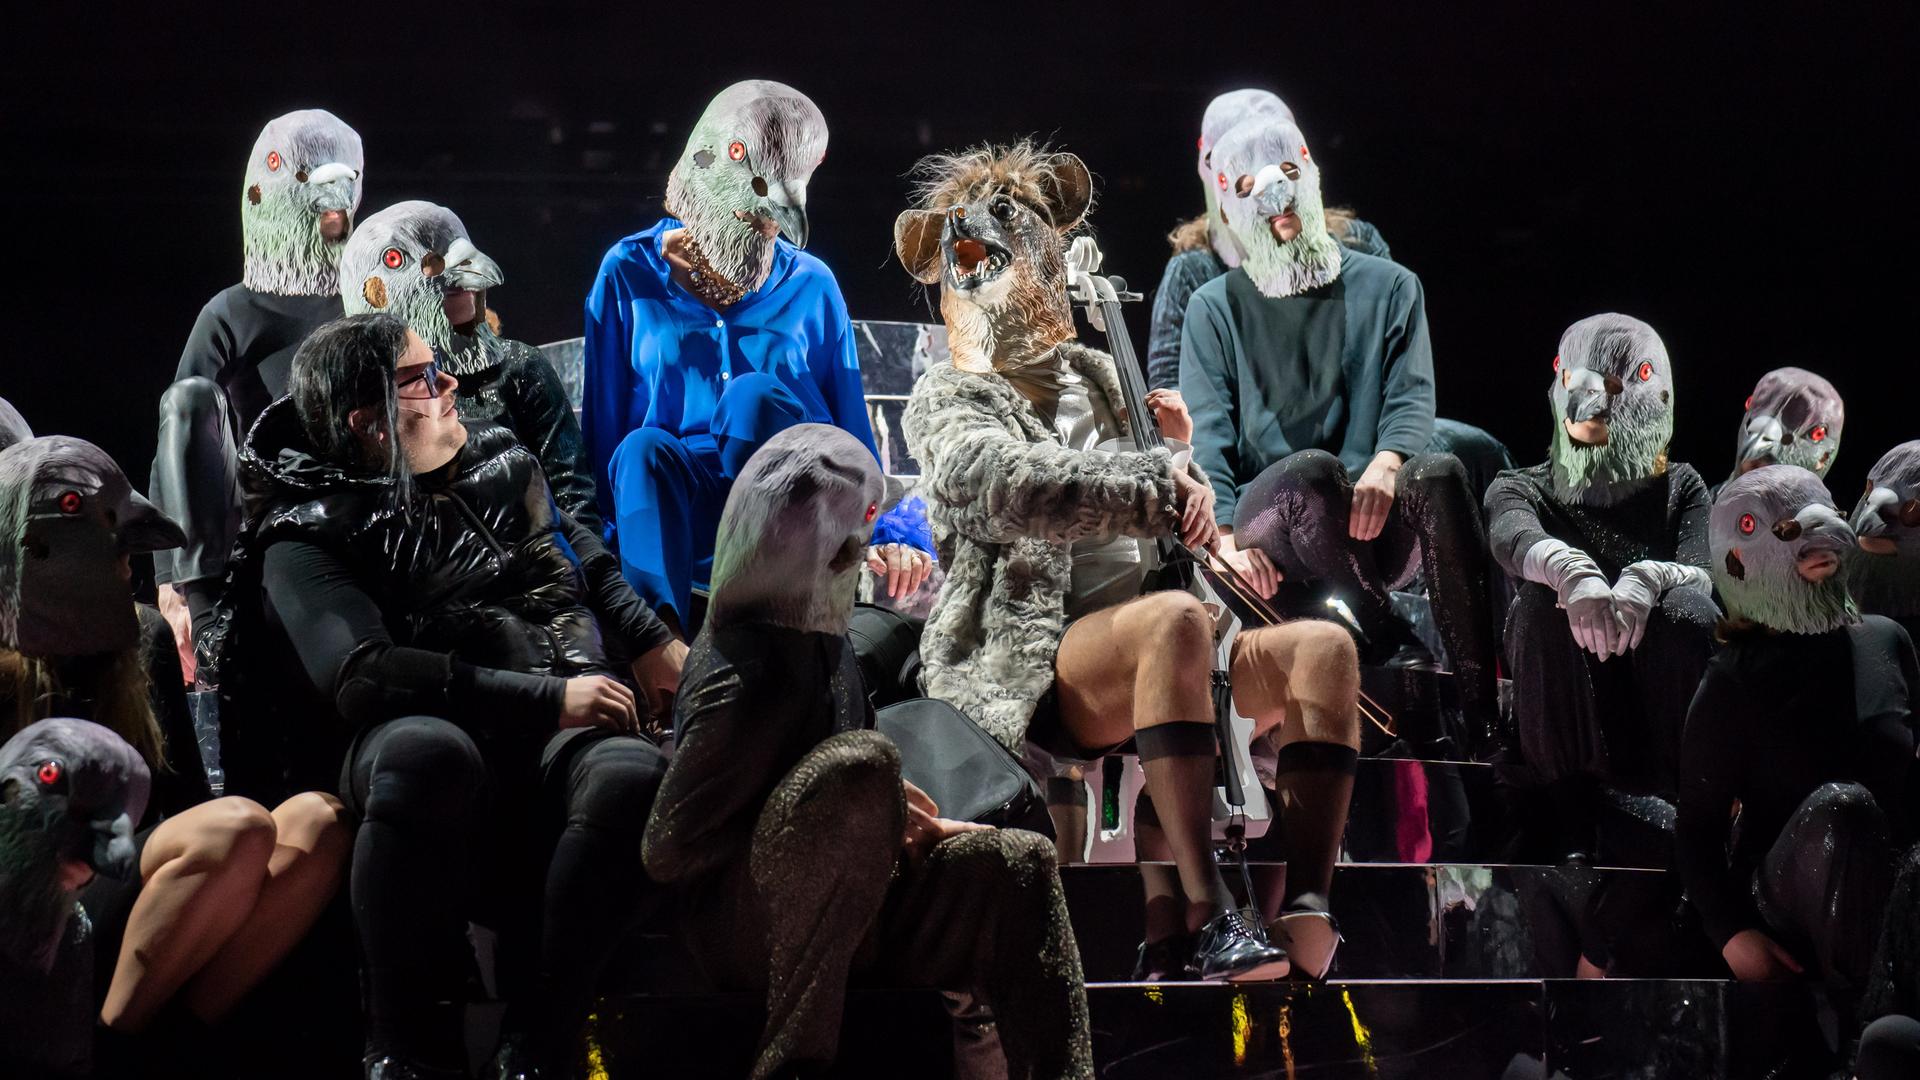 Bühnenszene aus der Operette "Die Rache der Fledermaus" am Thalia Theater. Björn Meyer sitzt mit Fledermausmaske in der Mitte, umrahmt von mehreren Darstellerinnen und Darstellern.